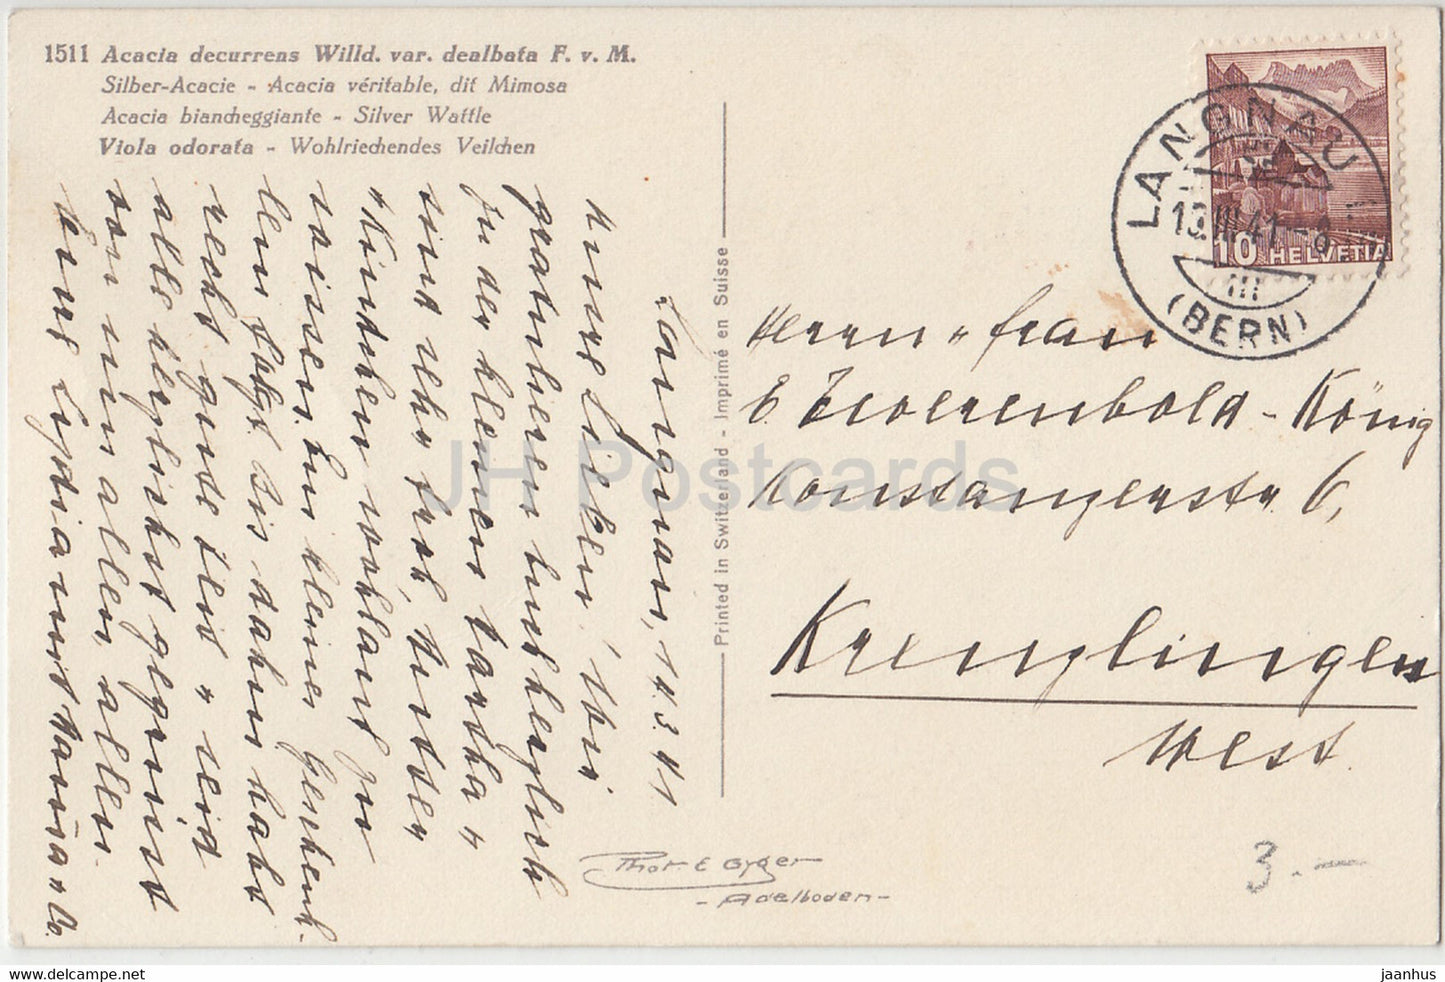 Akazie decurrens - Silber Acacie - Viola odorata - Blumen - 1511 - alte Postkarte - 1941 - Schweiz - gebraucht